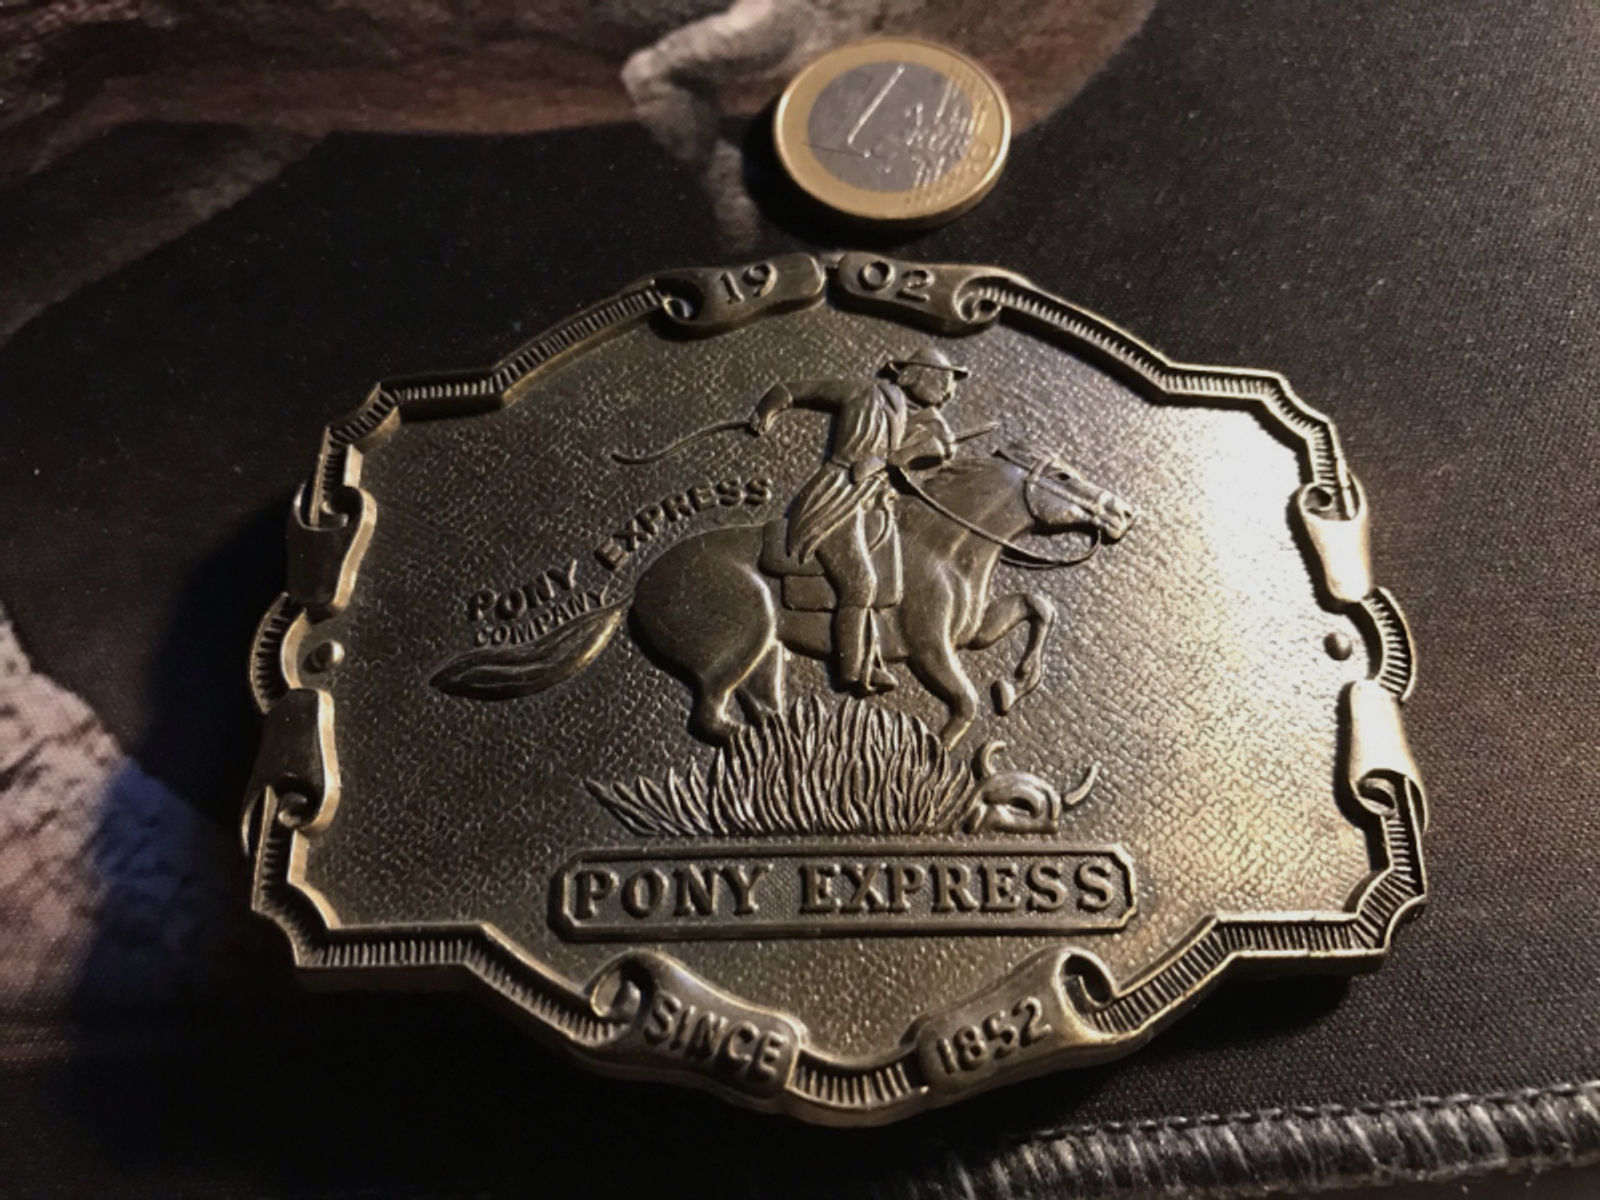 USA Belt Buckle, Gürtelschnalle, Pony Express, Version 3